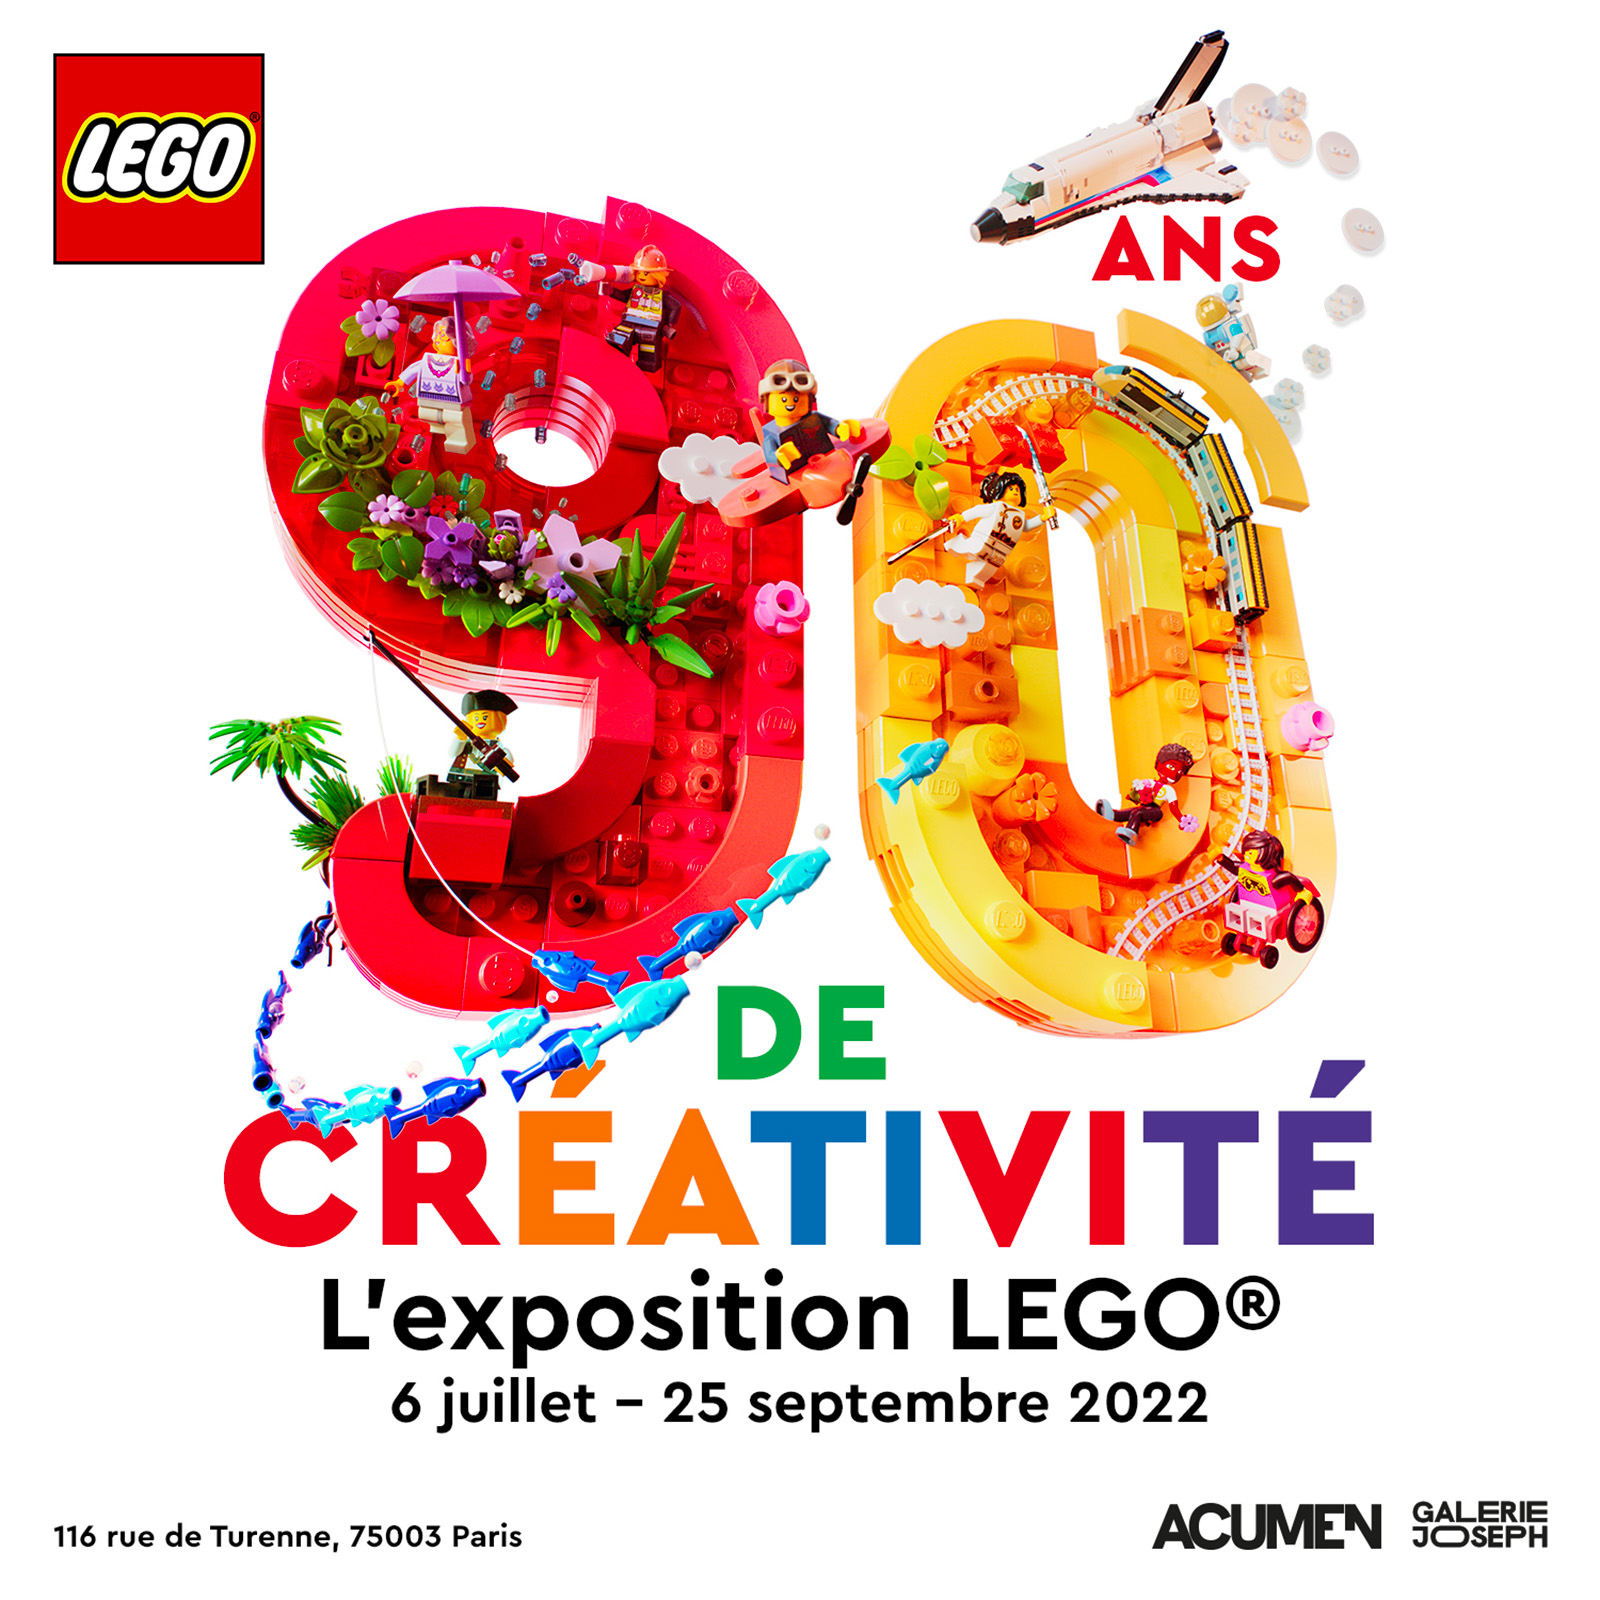 Taispeántas LEGO 90 Bliain na Cruthaitheachta: Cúig thicéad iontrála le buachan